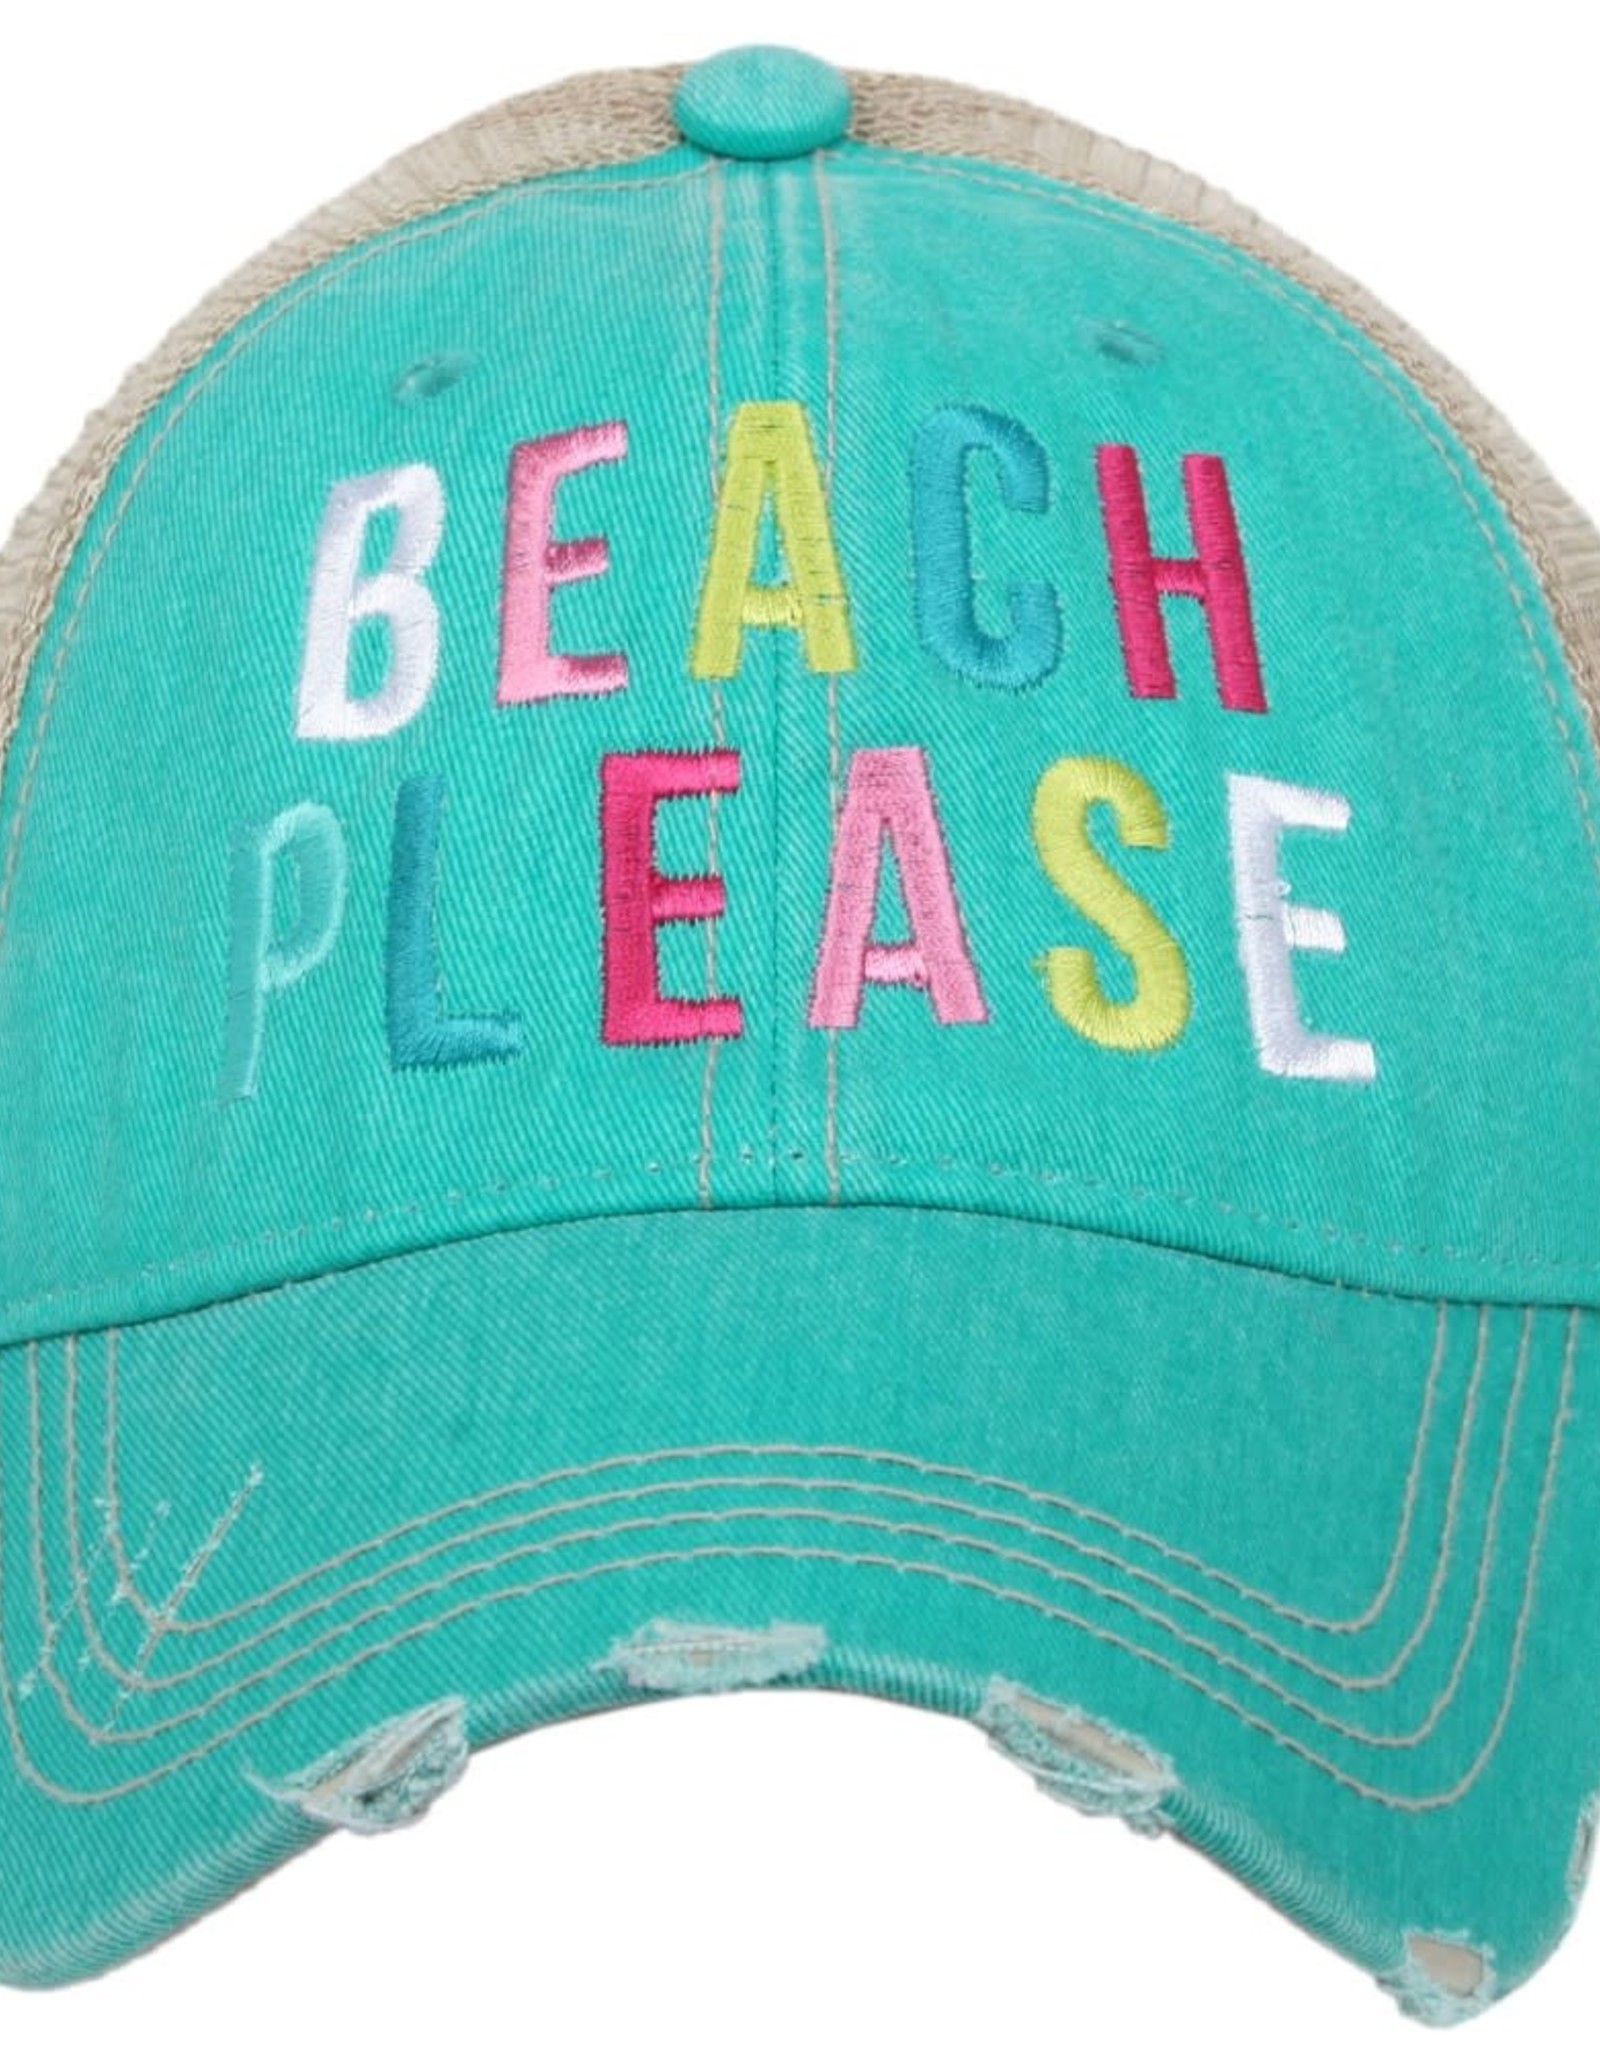 TLC BEACH PLEASE TRUCKER HAT